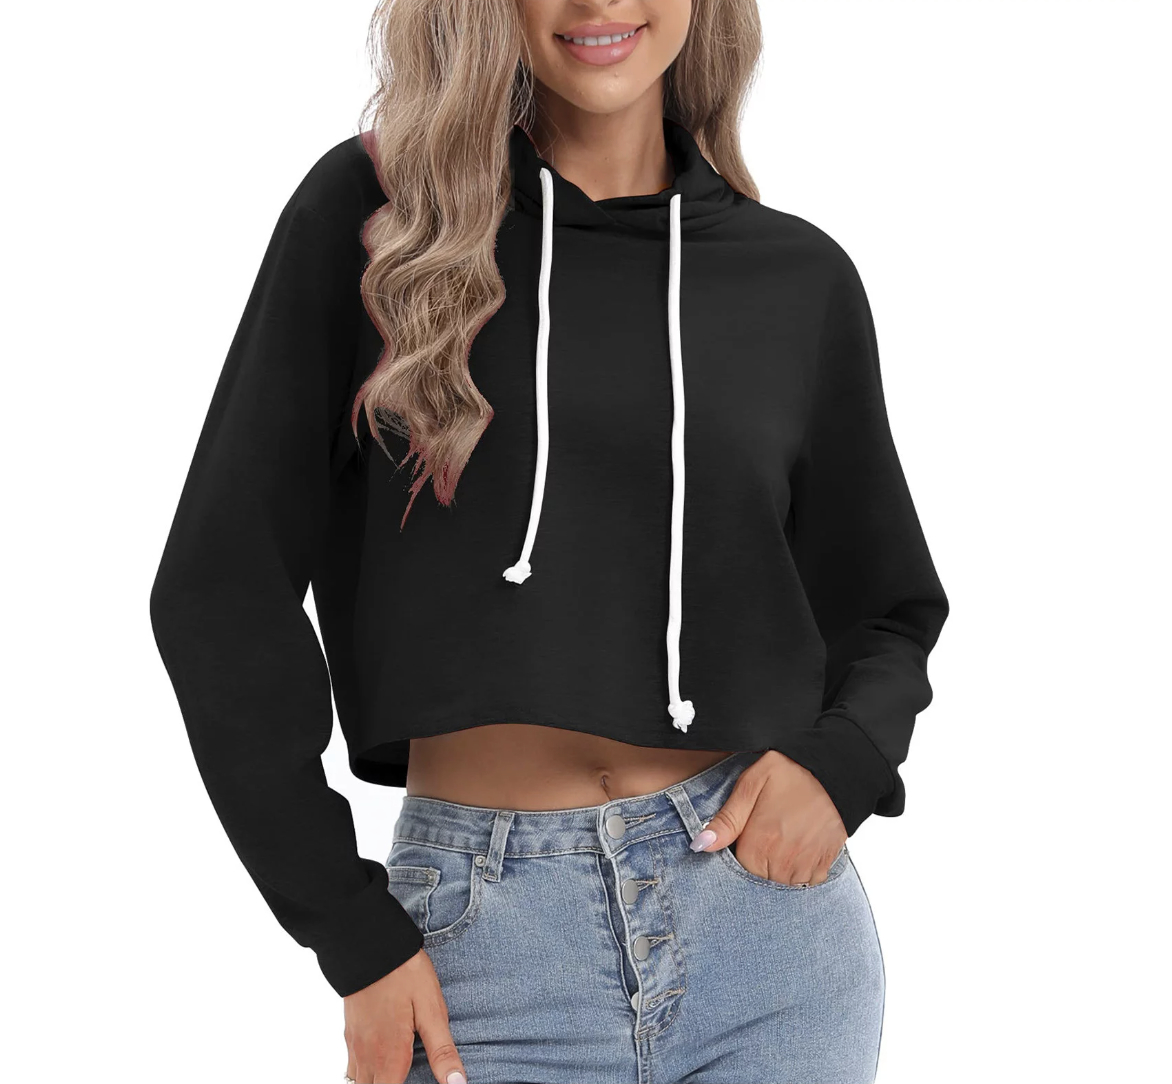 A black cropped hoodie